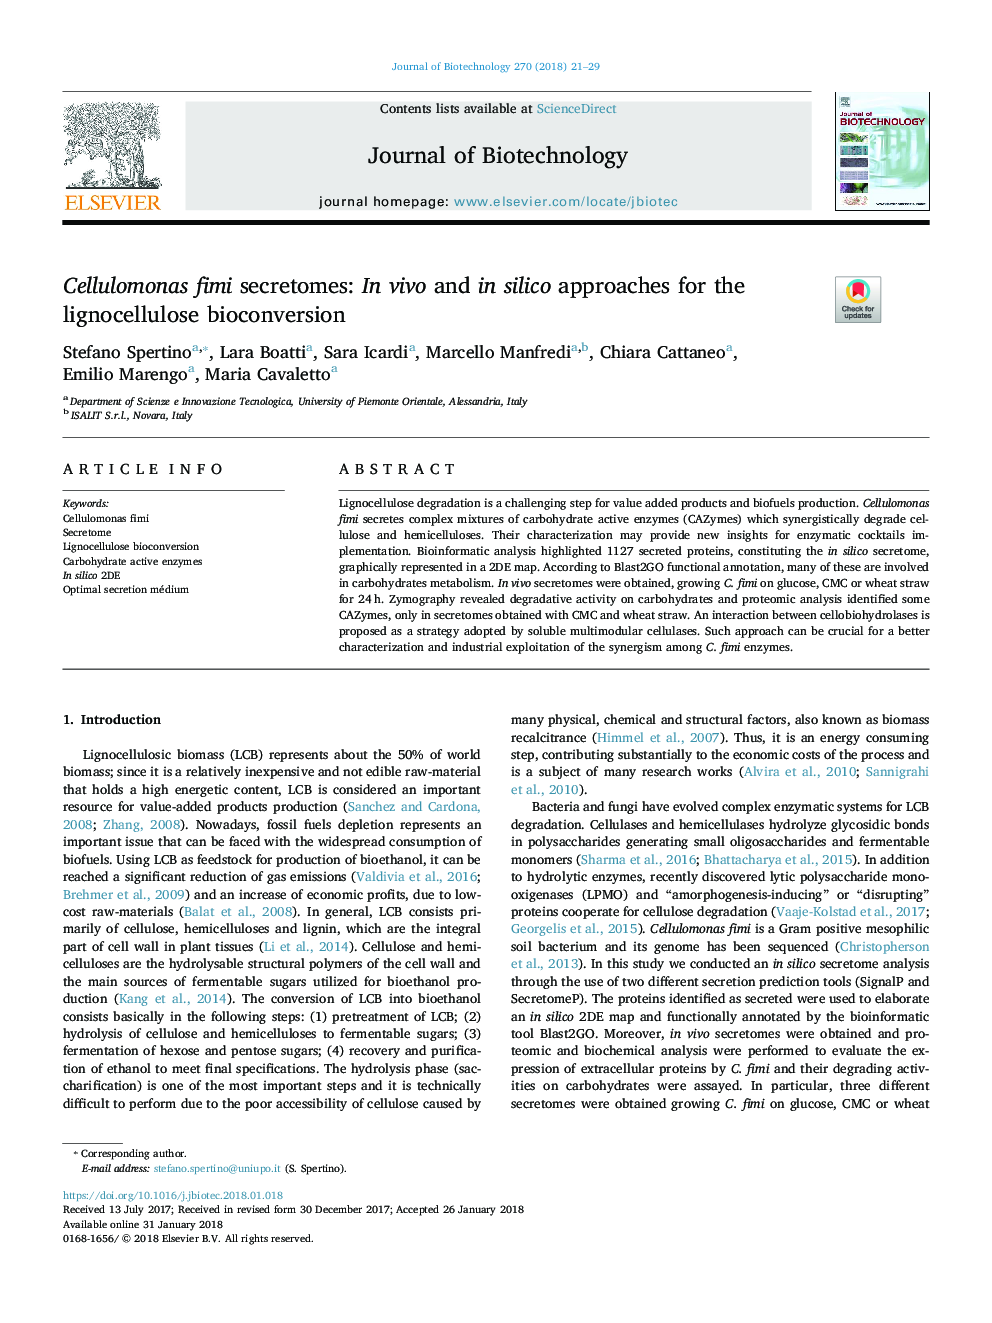 Cellulomonas fimi secretomes: In vivo and in silico approaches for the lignocellulose bioconversion